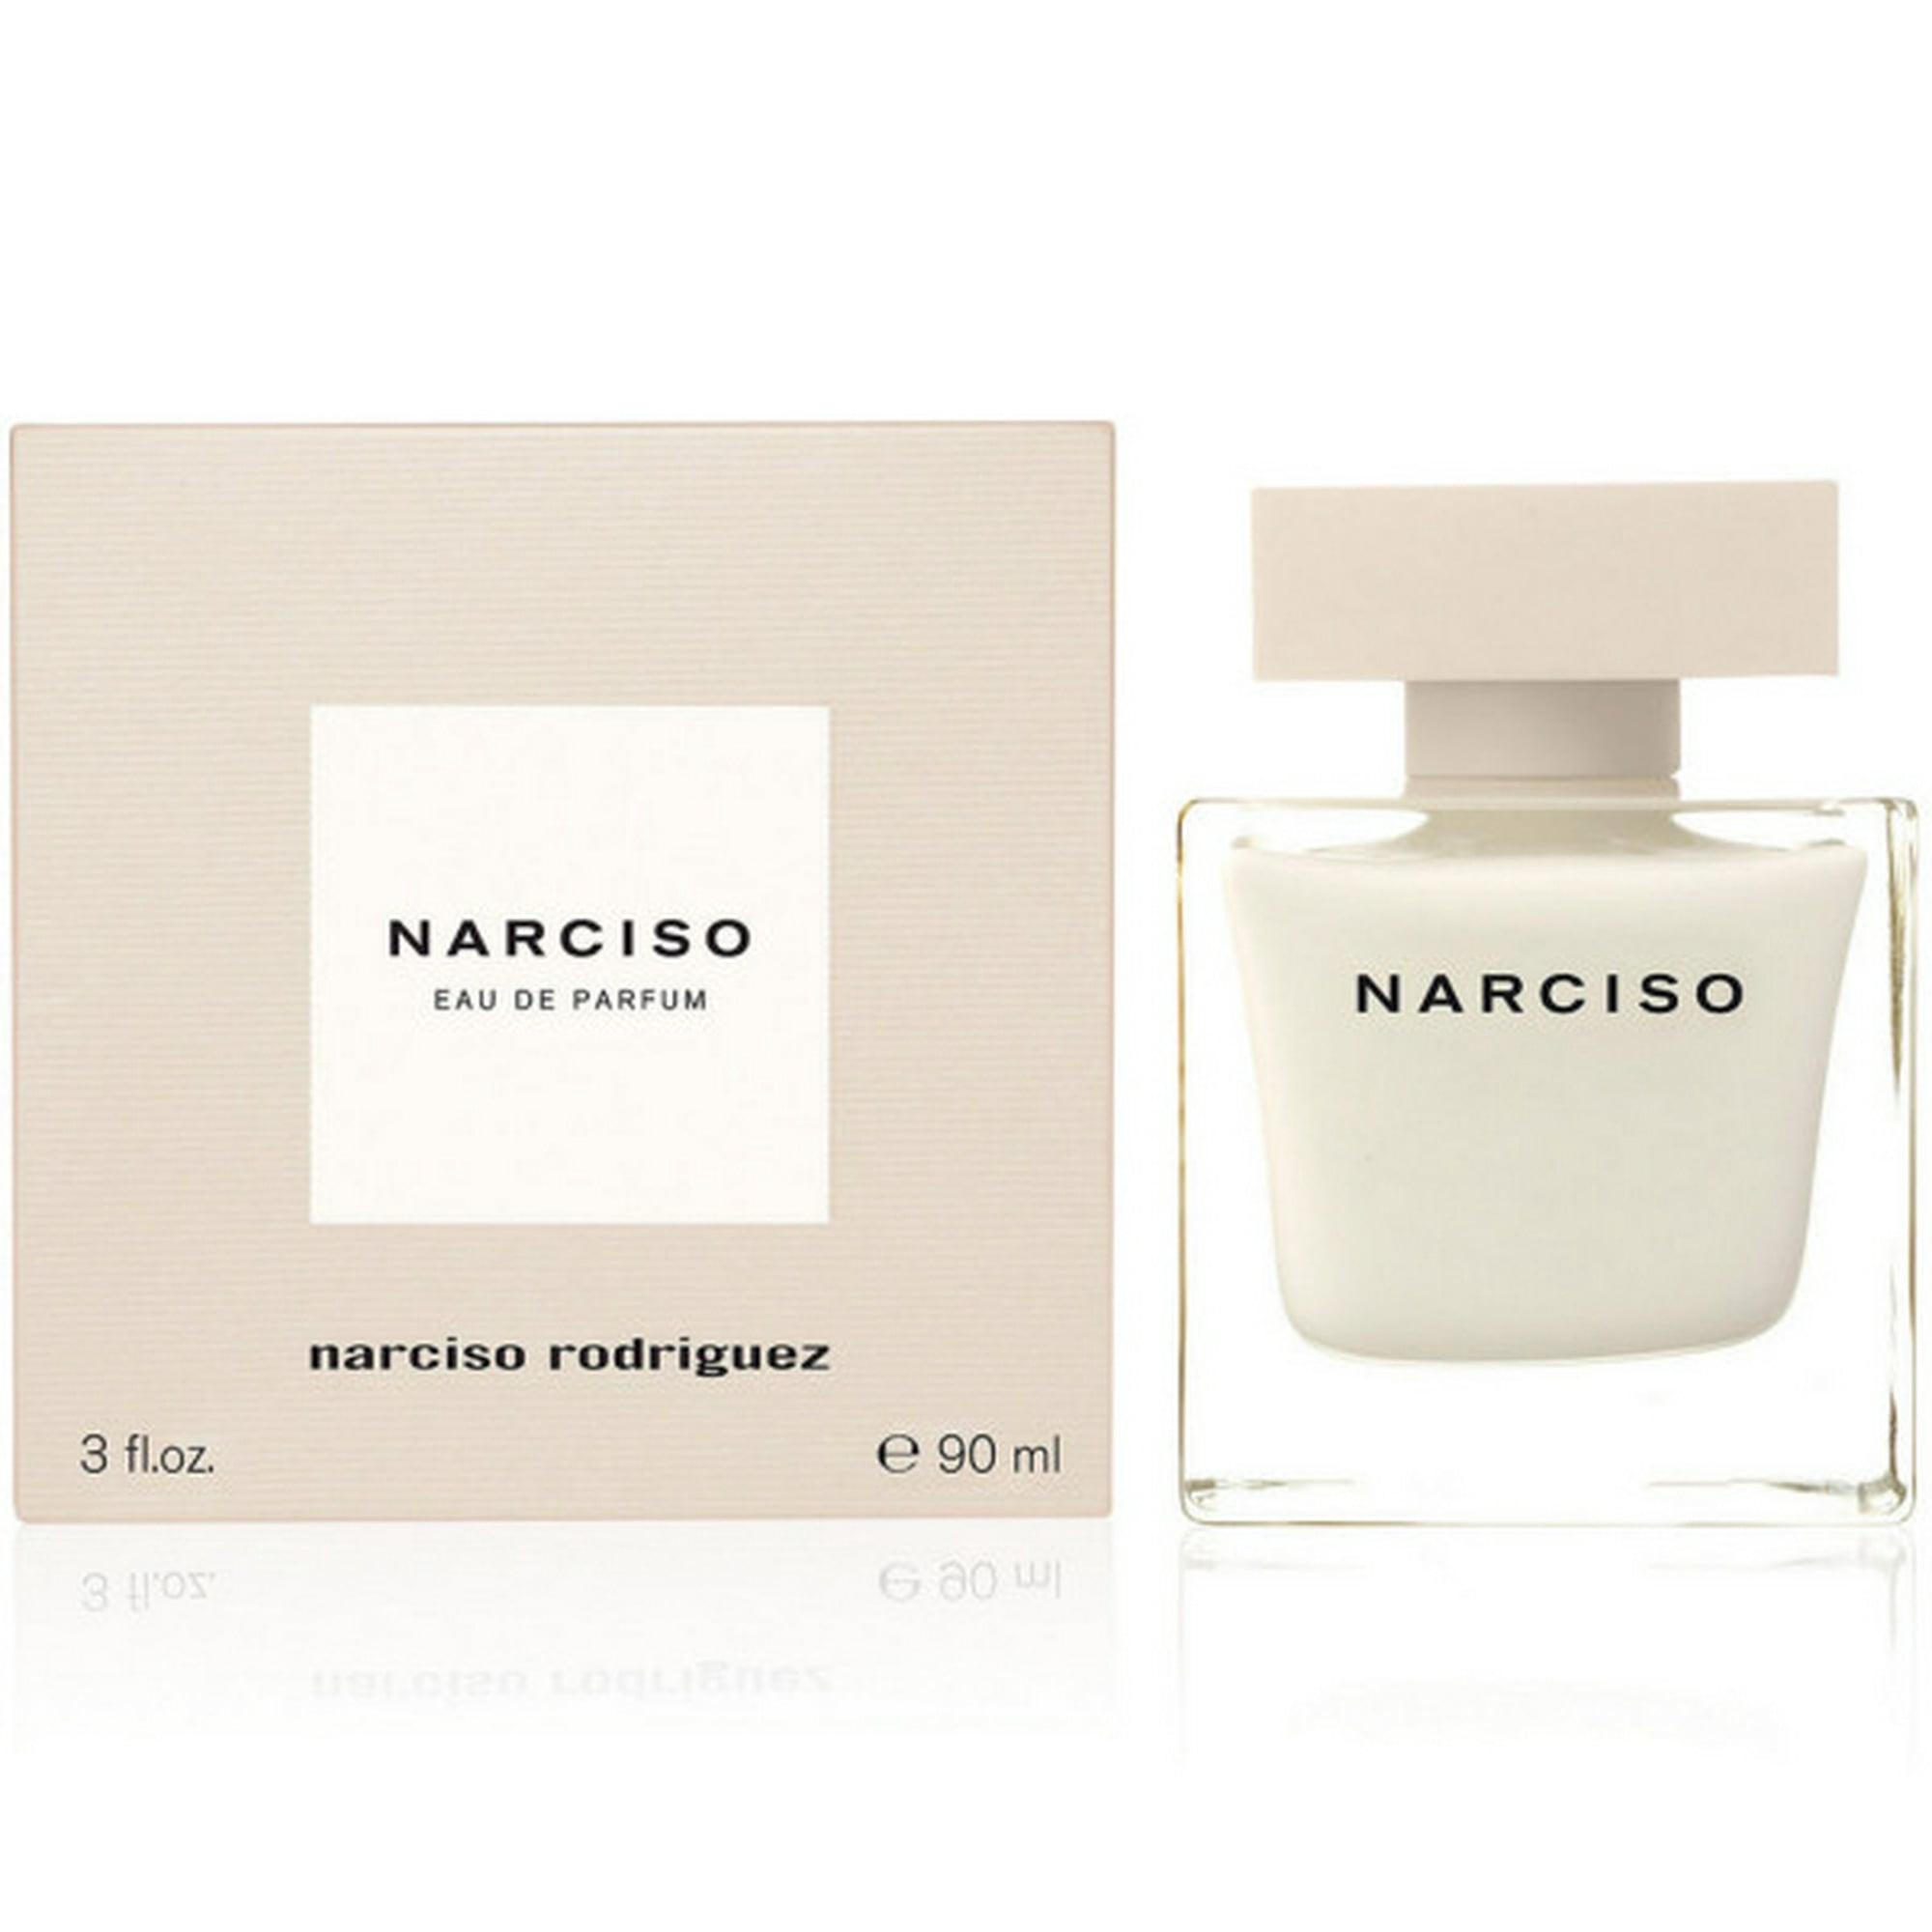 Narciso By Narciso Eau De Parfum Spray 3 oz | Walmart